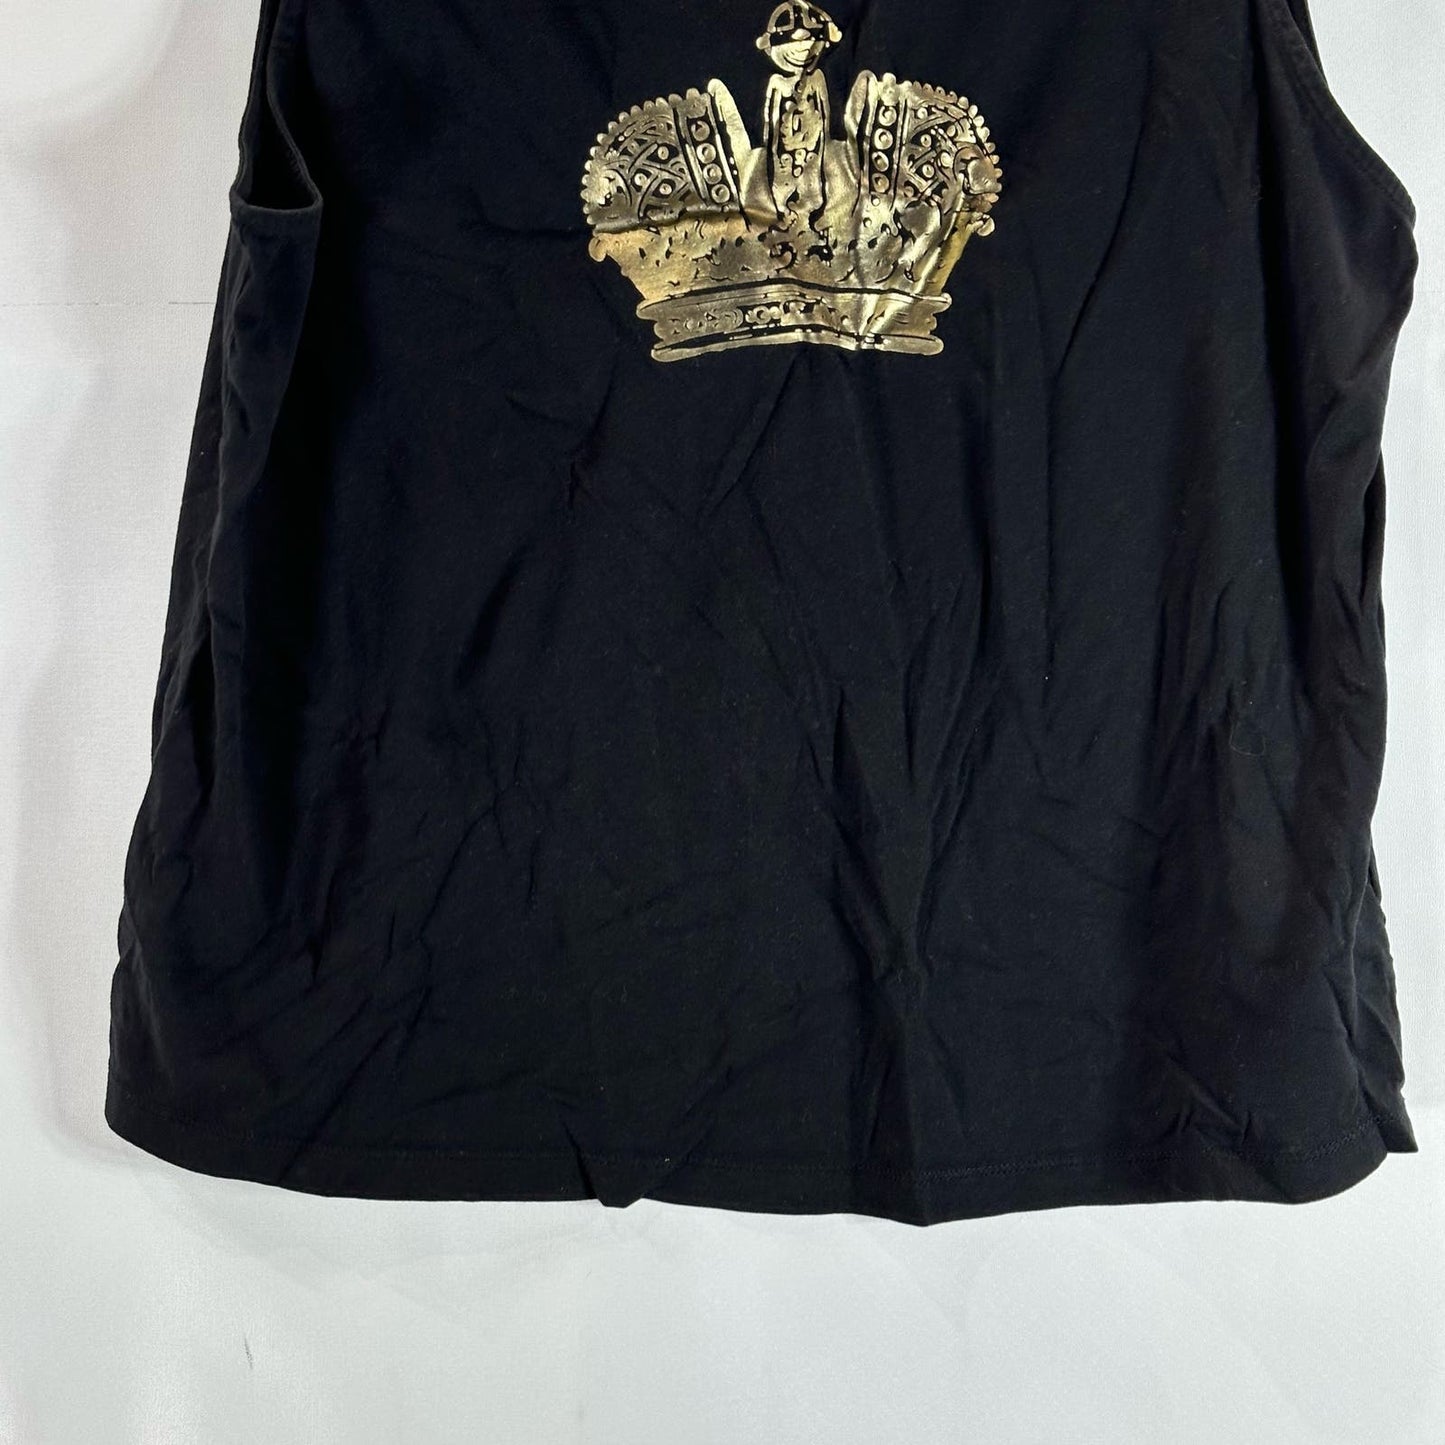 JUICY COUTURE Black Label Women's Black/Gold Crown Lace-Up Shoulder Tank SZ XL